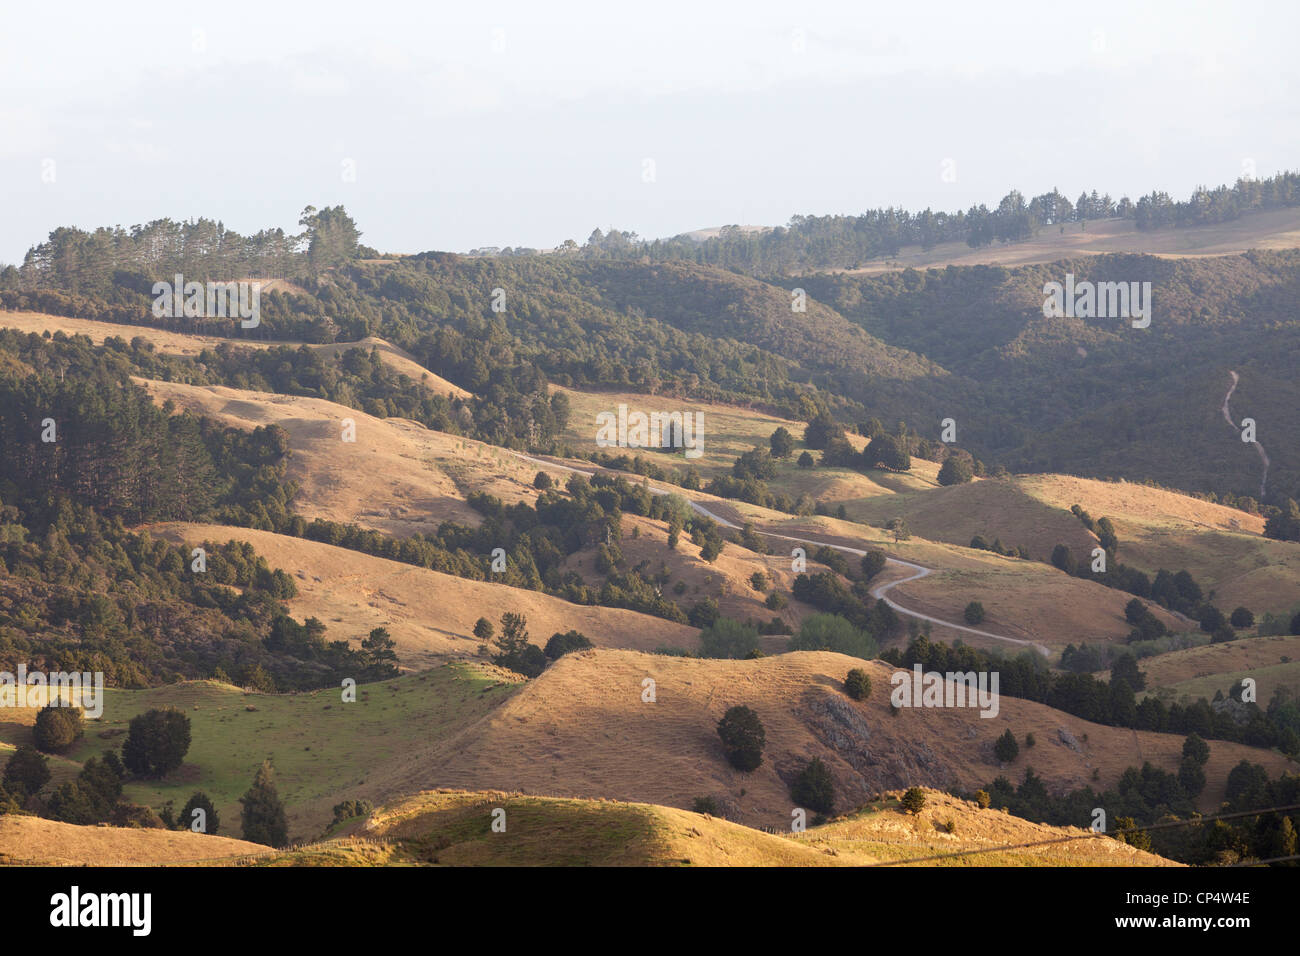 Una scena pastorale con erba golden hills, pascoli macchiato con alberi nel nord della Nuova Zelanda Foto Stock